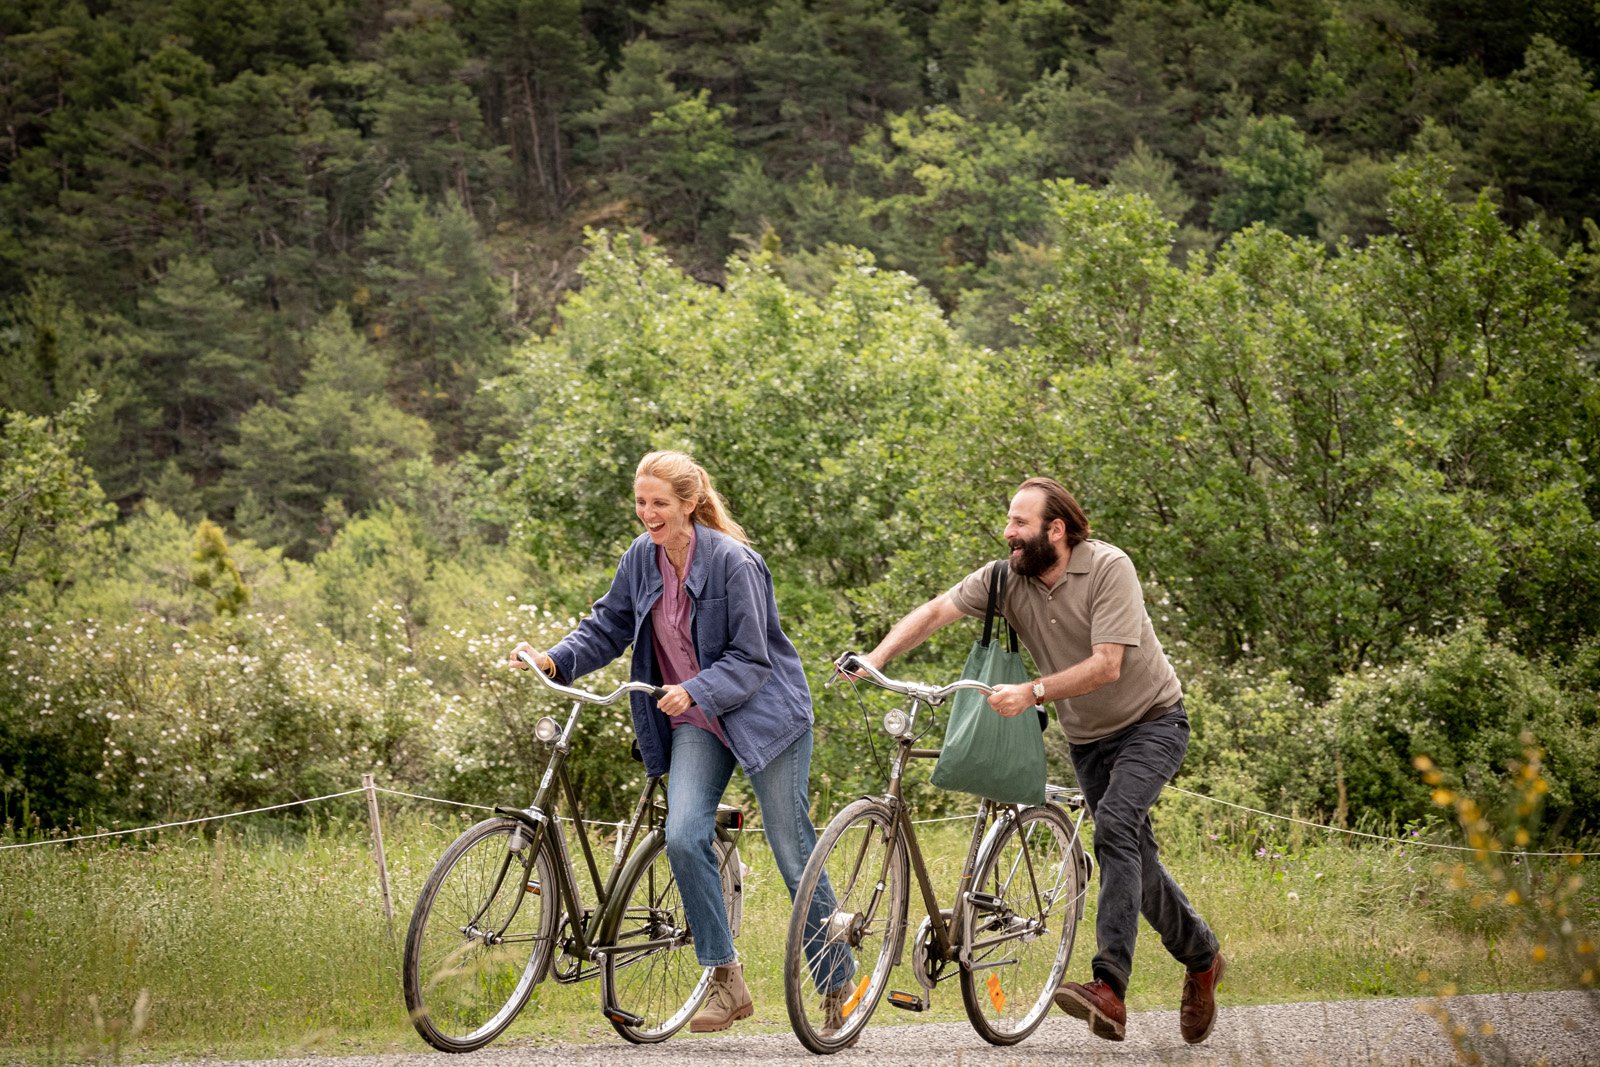 Sandrine Kiberlain et Vincent Macaigne poussent leur vélo sur un sentier de forêt en riant